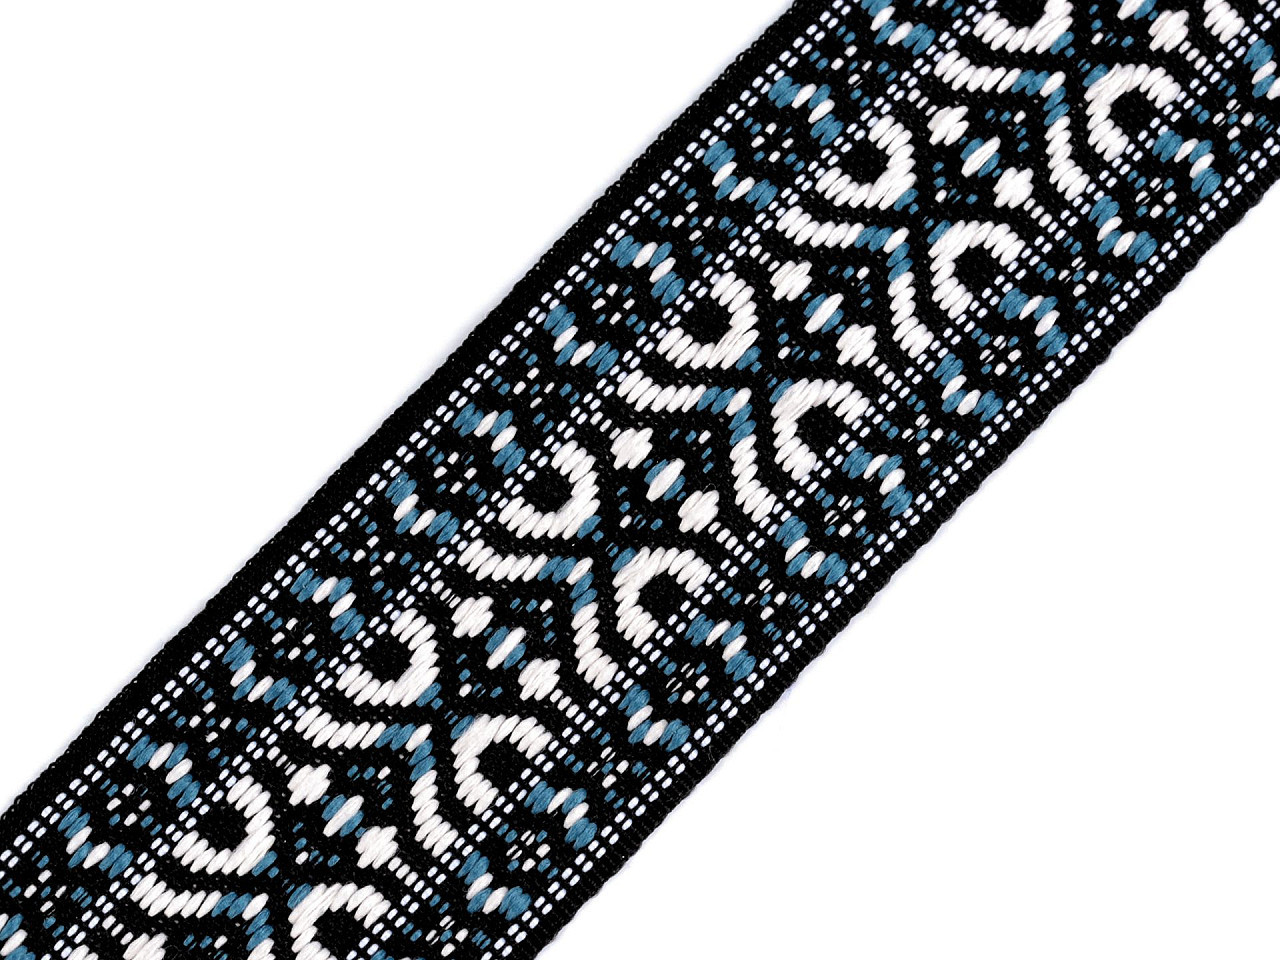 Vzorovka / popruh šíře 47 mm, barva modrá černá